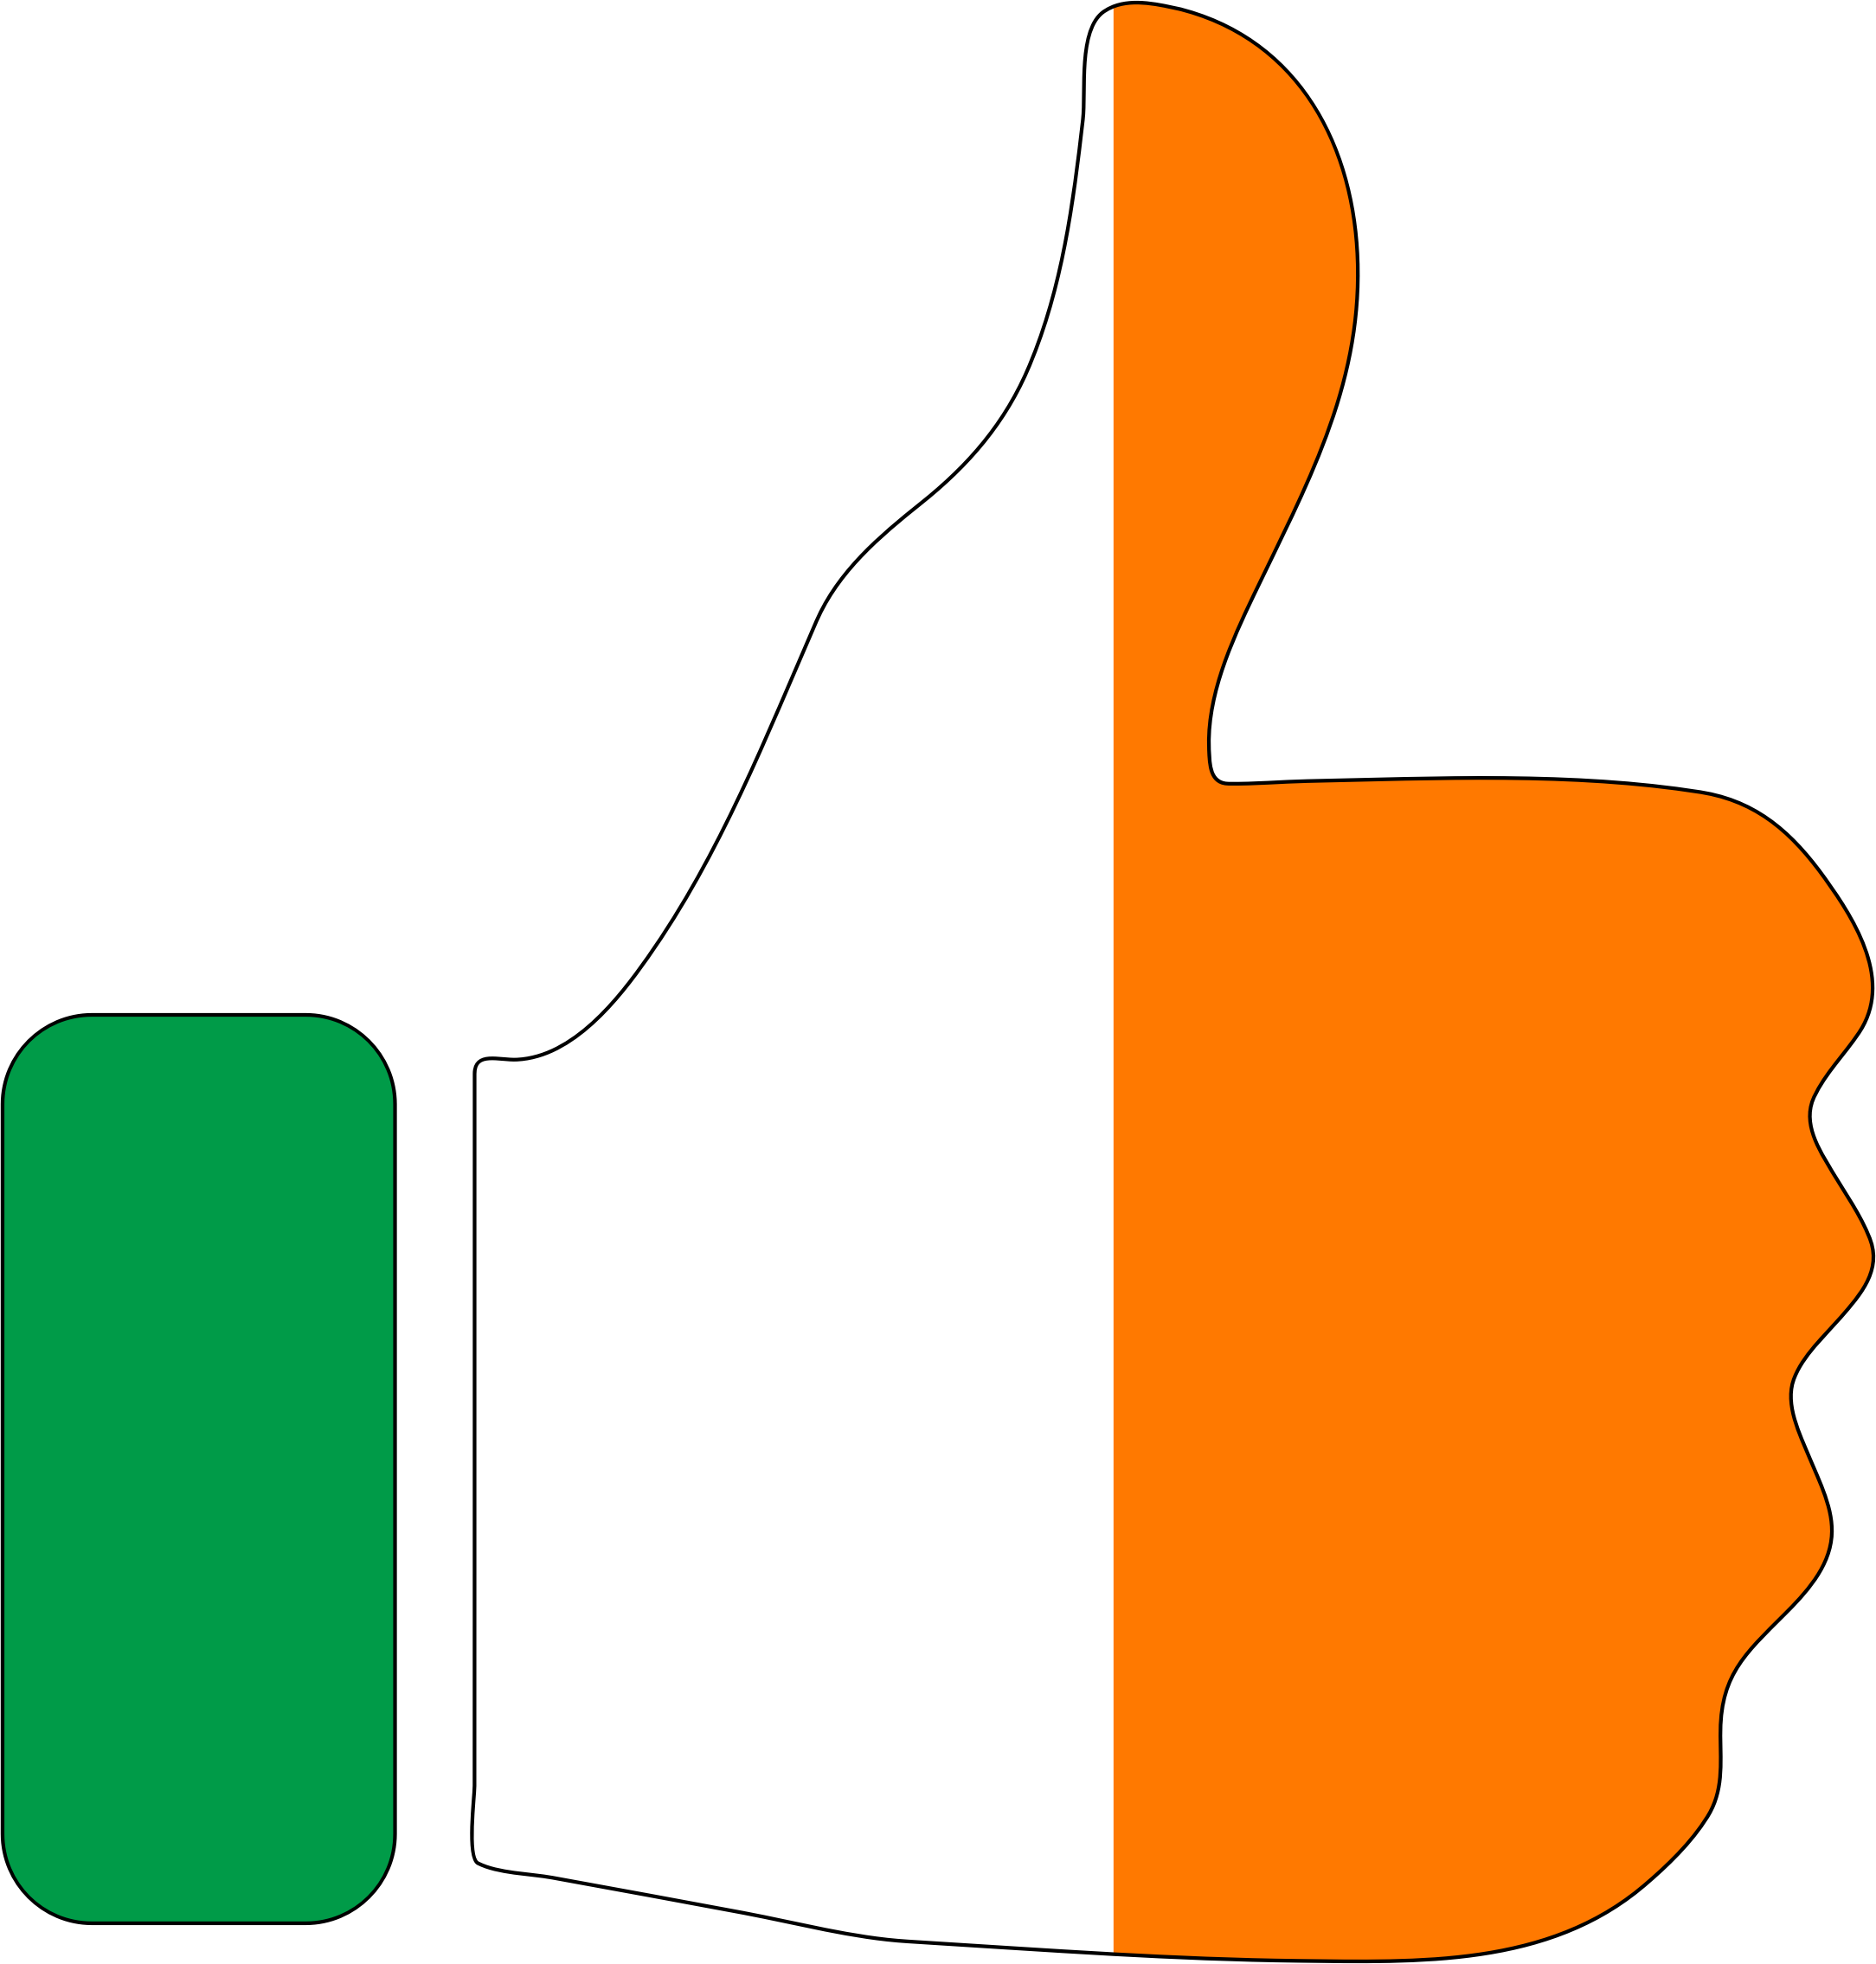 Big Image - Ireland Thumbs Up (2168x2270)